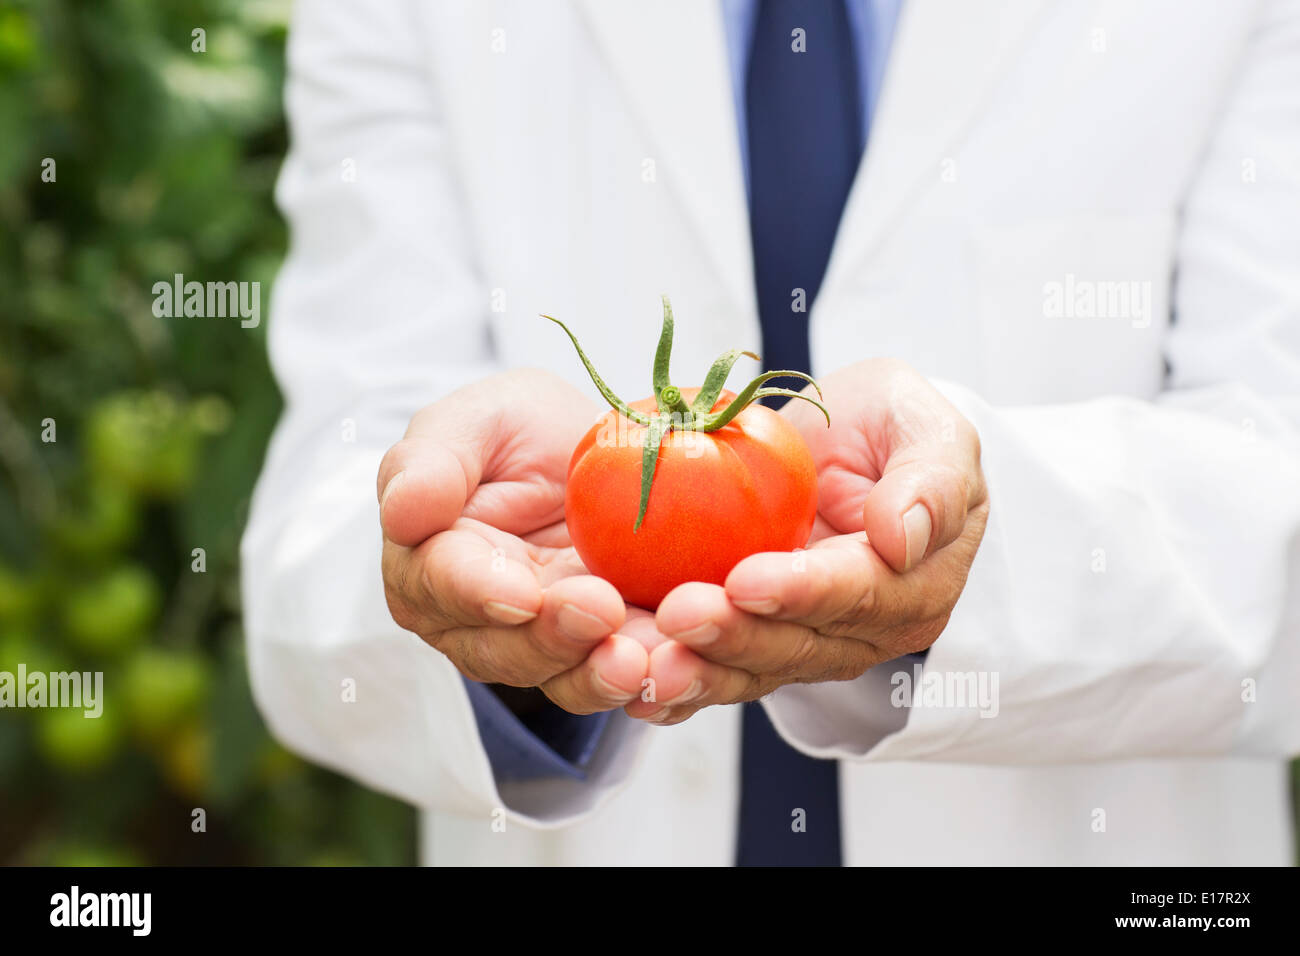 Botanist holding ripe tomato Stock Photo